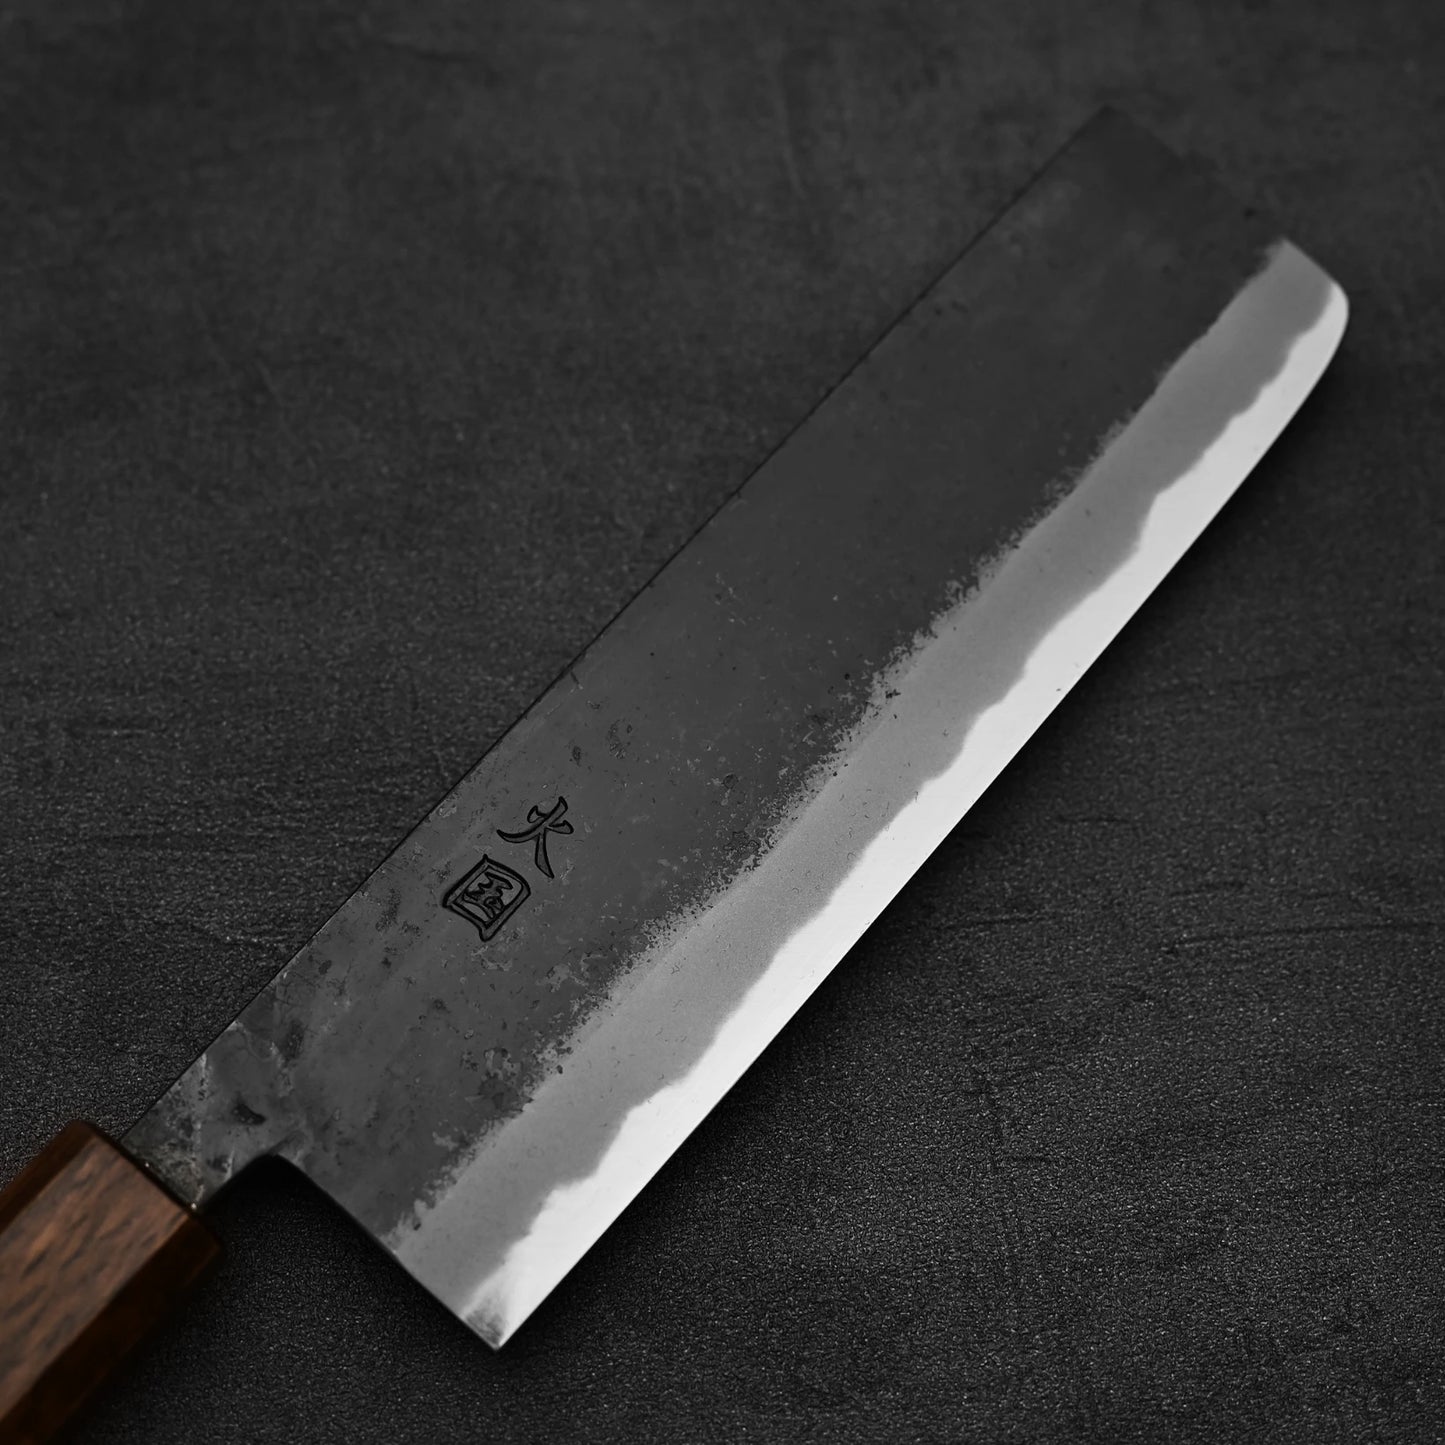 Close up view of the blade of Hinokuni kurouchi shirogami#1 nakiri knife